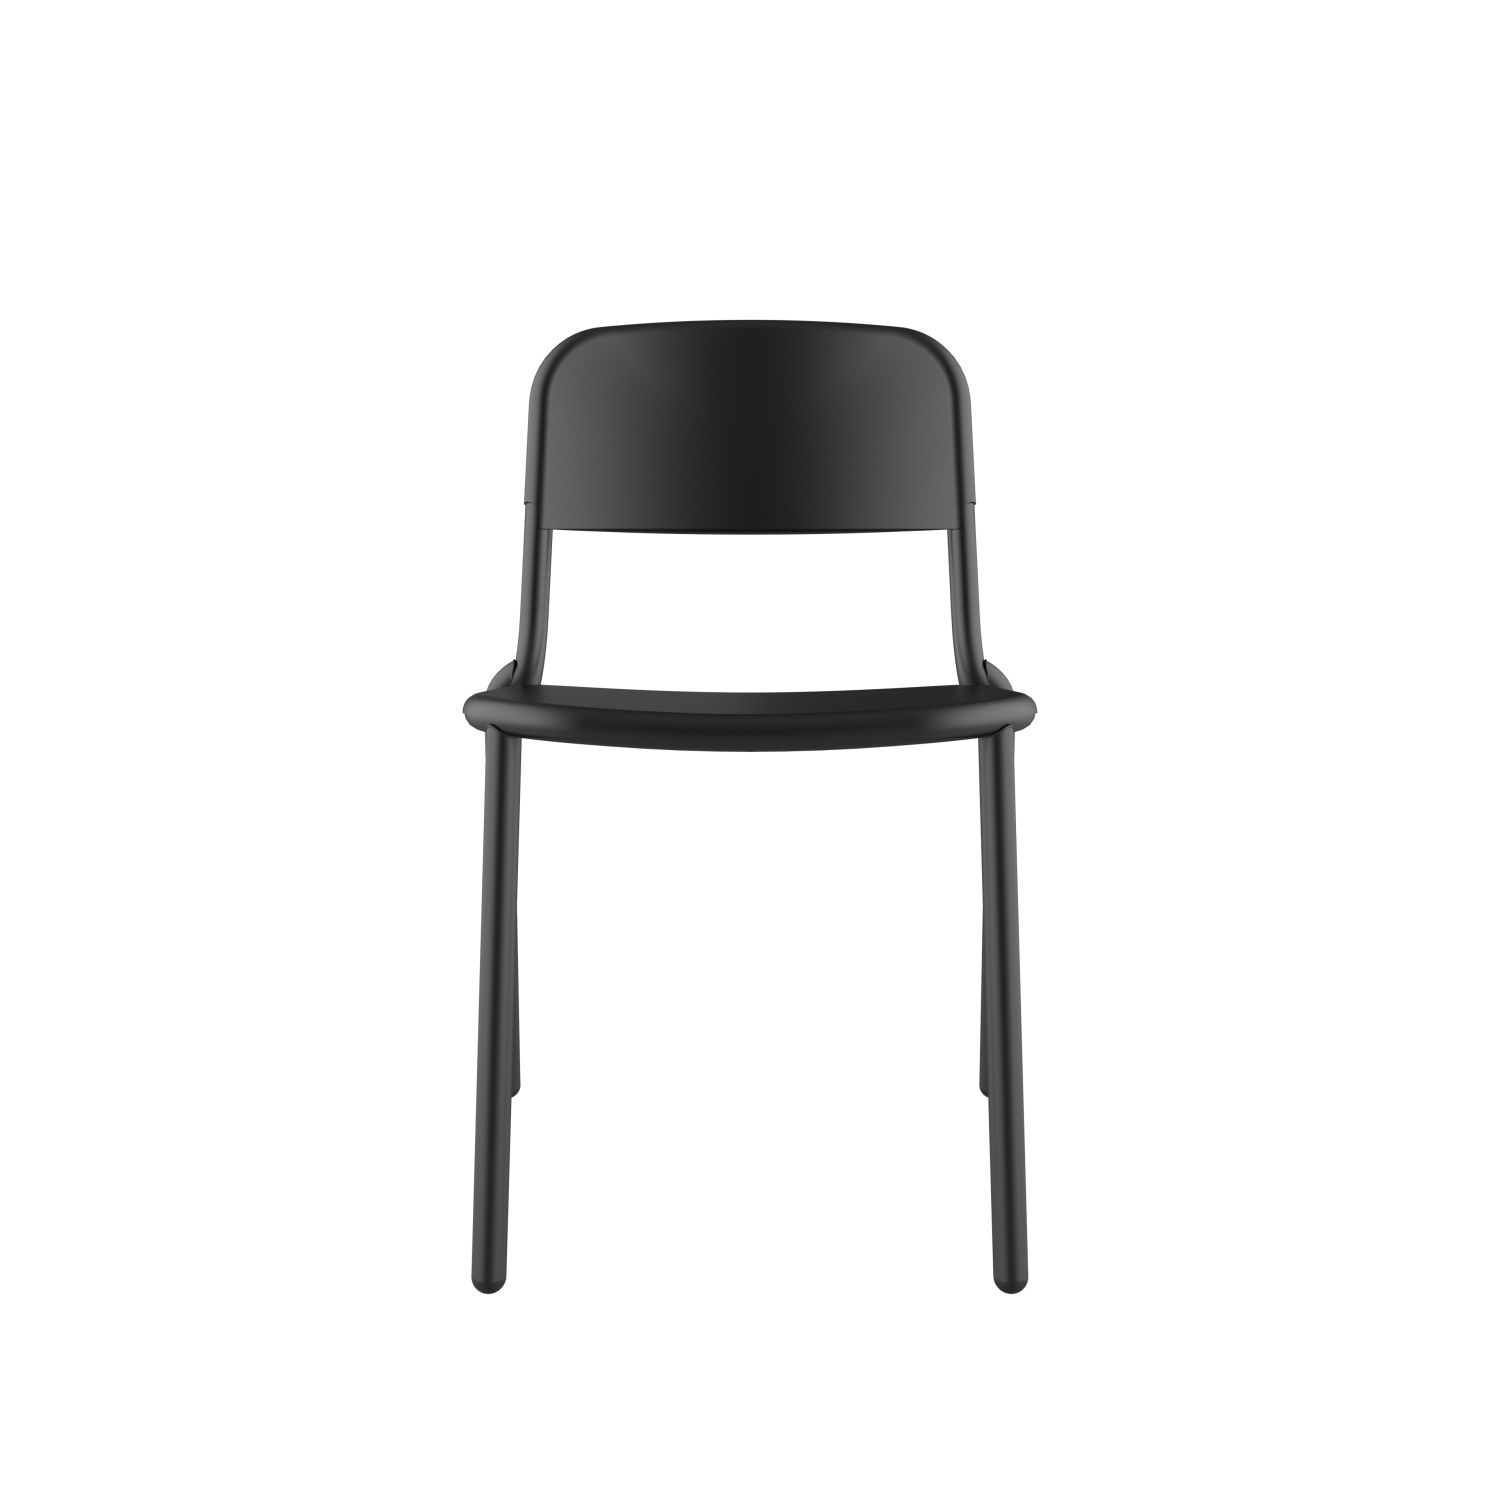 lensvelt studio stefan scholten loop chair stackable no armrests no perforation black ral9005